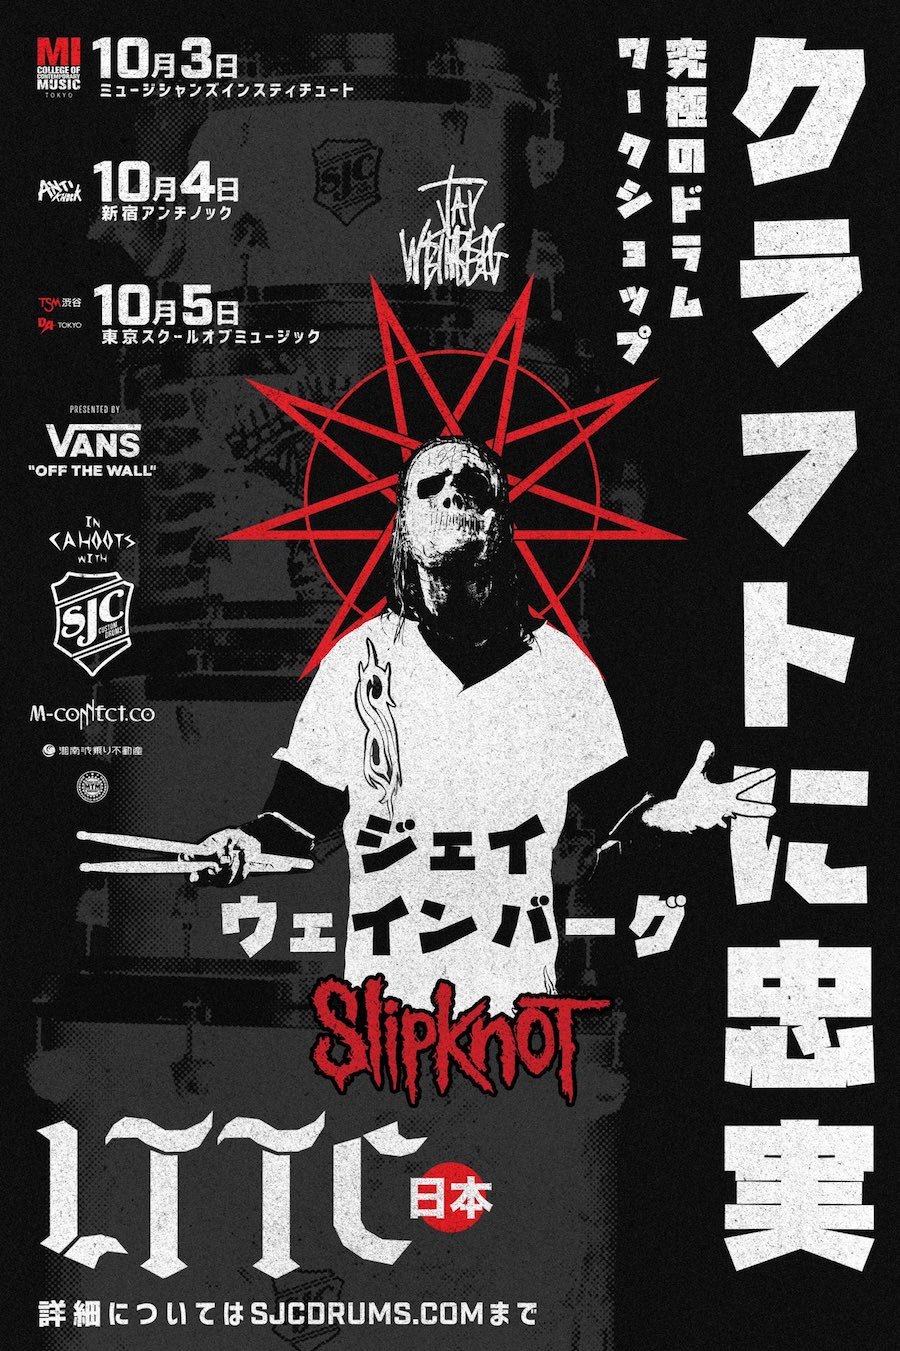 Slipknotのjay Weinbergによるドラムクリニックが東京で3日間開催決定 帰ってきた モンクアル